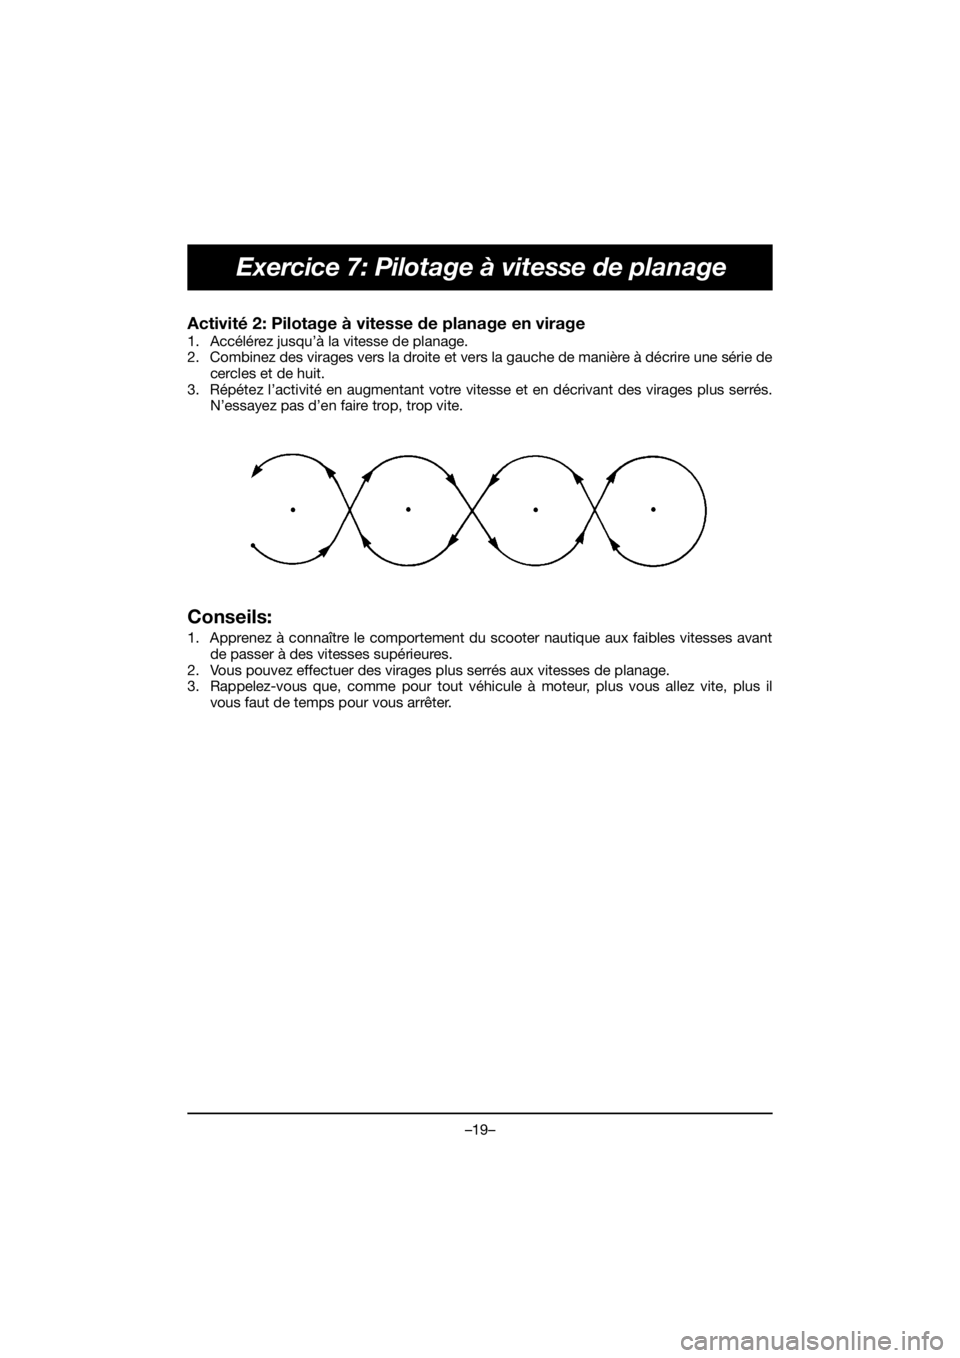 YAMAHA EX SPORT 2020  Manuale de Empleo (in Spanish) –19–
Exercice 7: Pilotage à vitesse de planage
Activité 2: Pilotage à vitesse de planage en virage 
1. Accélérez jusqu’à la vitesse de planage. 
2. Combinez des virages vers la droite et v